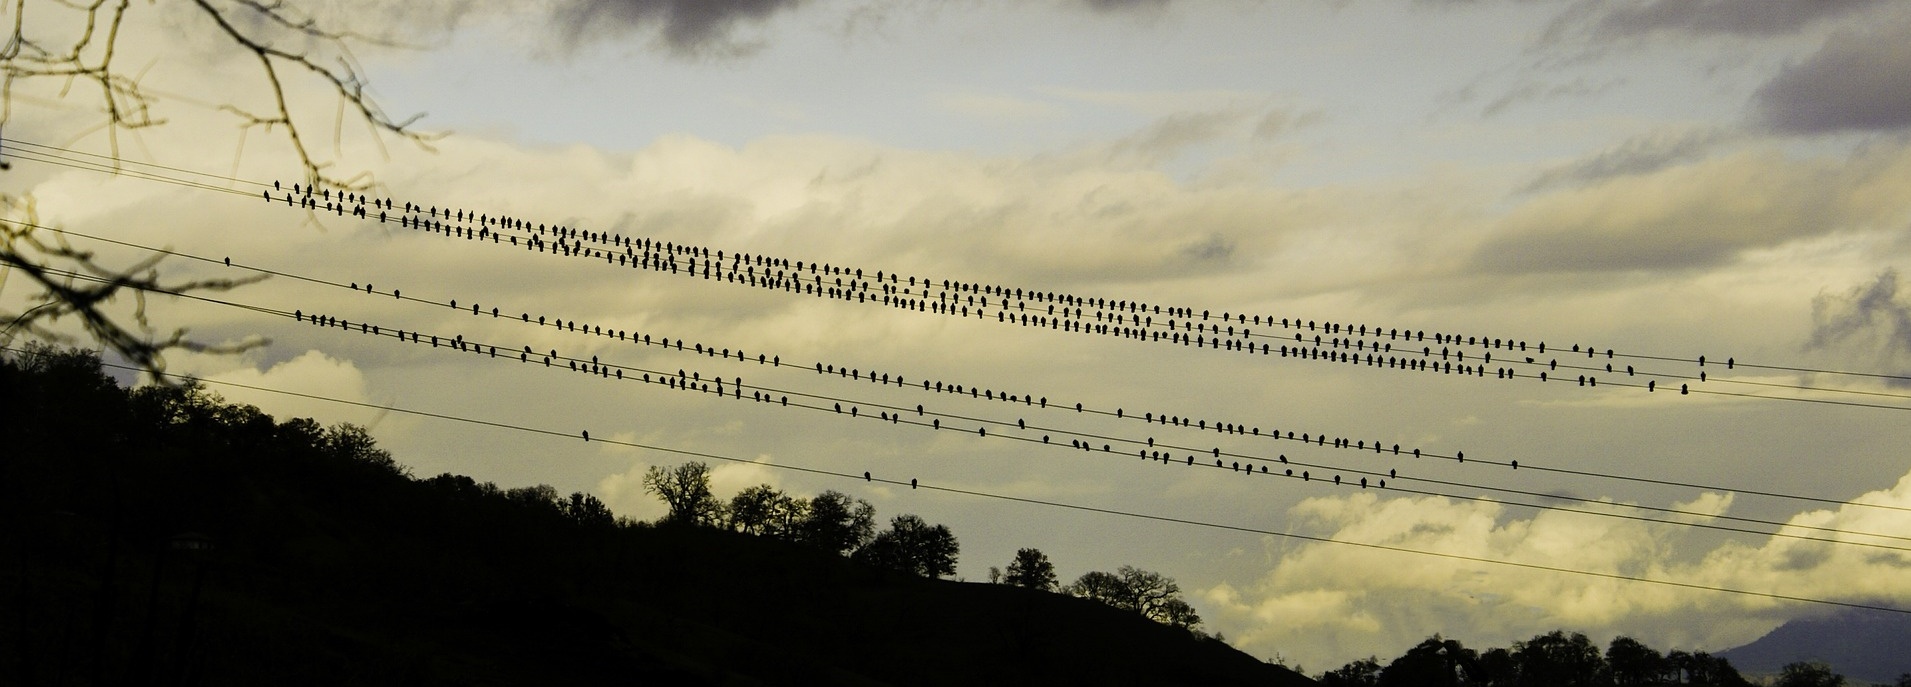 birds-on-wire-962437-edited.jpg